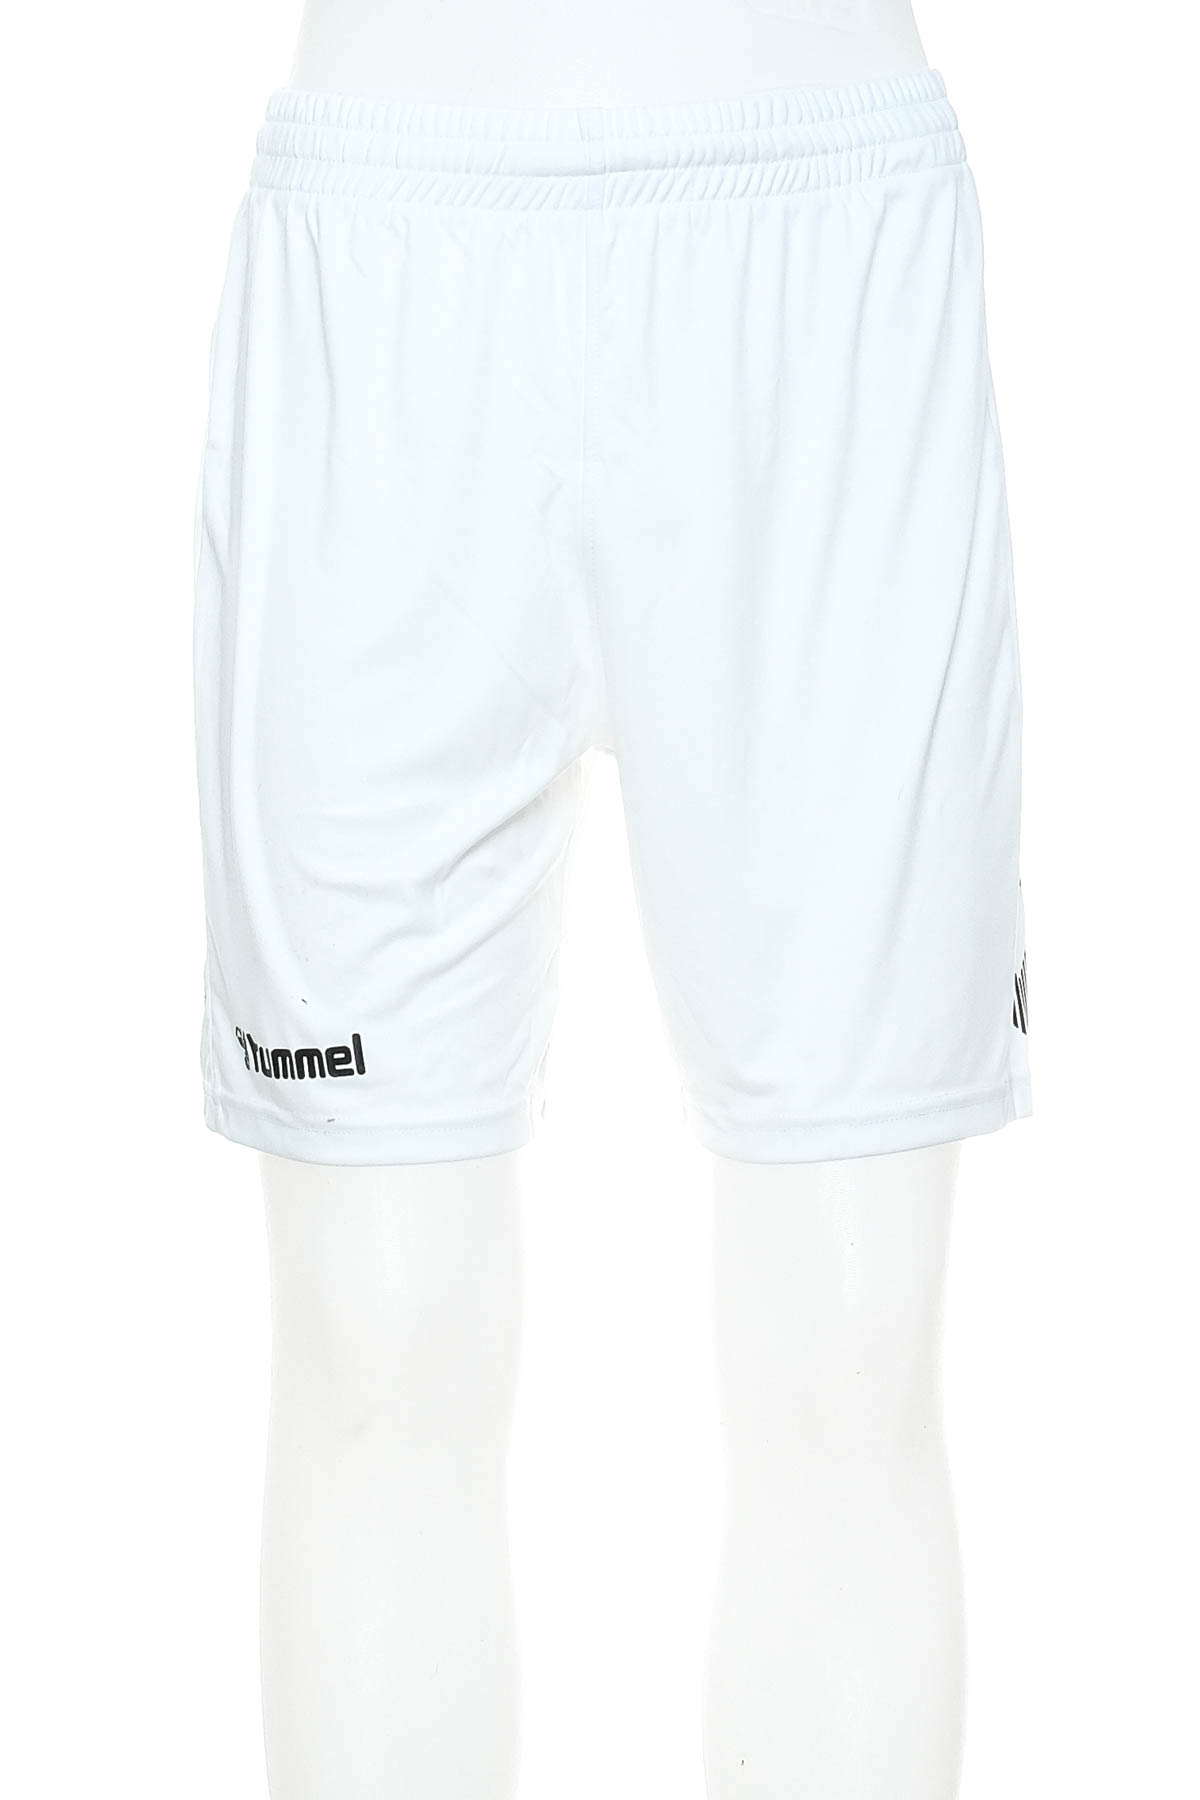 Men's shorts - Hummel - 0